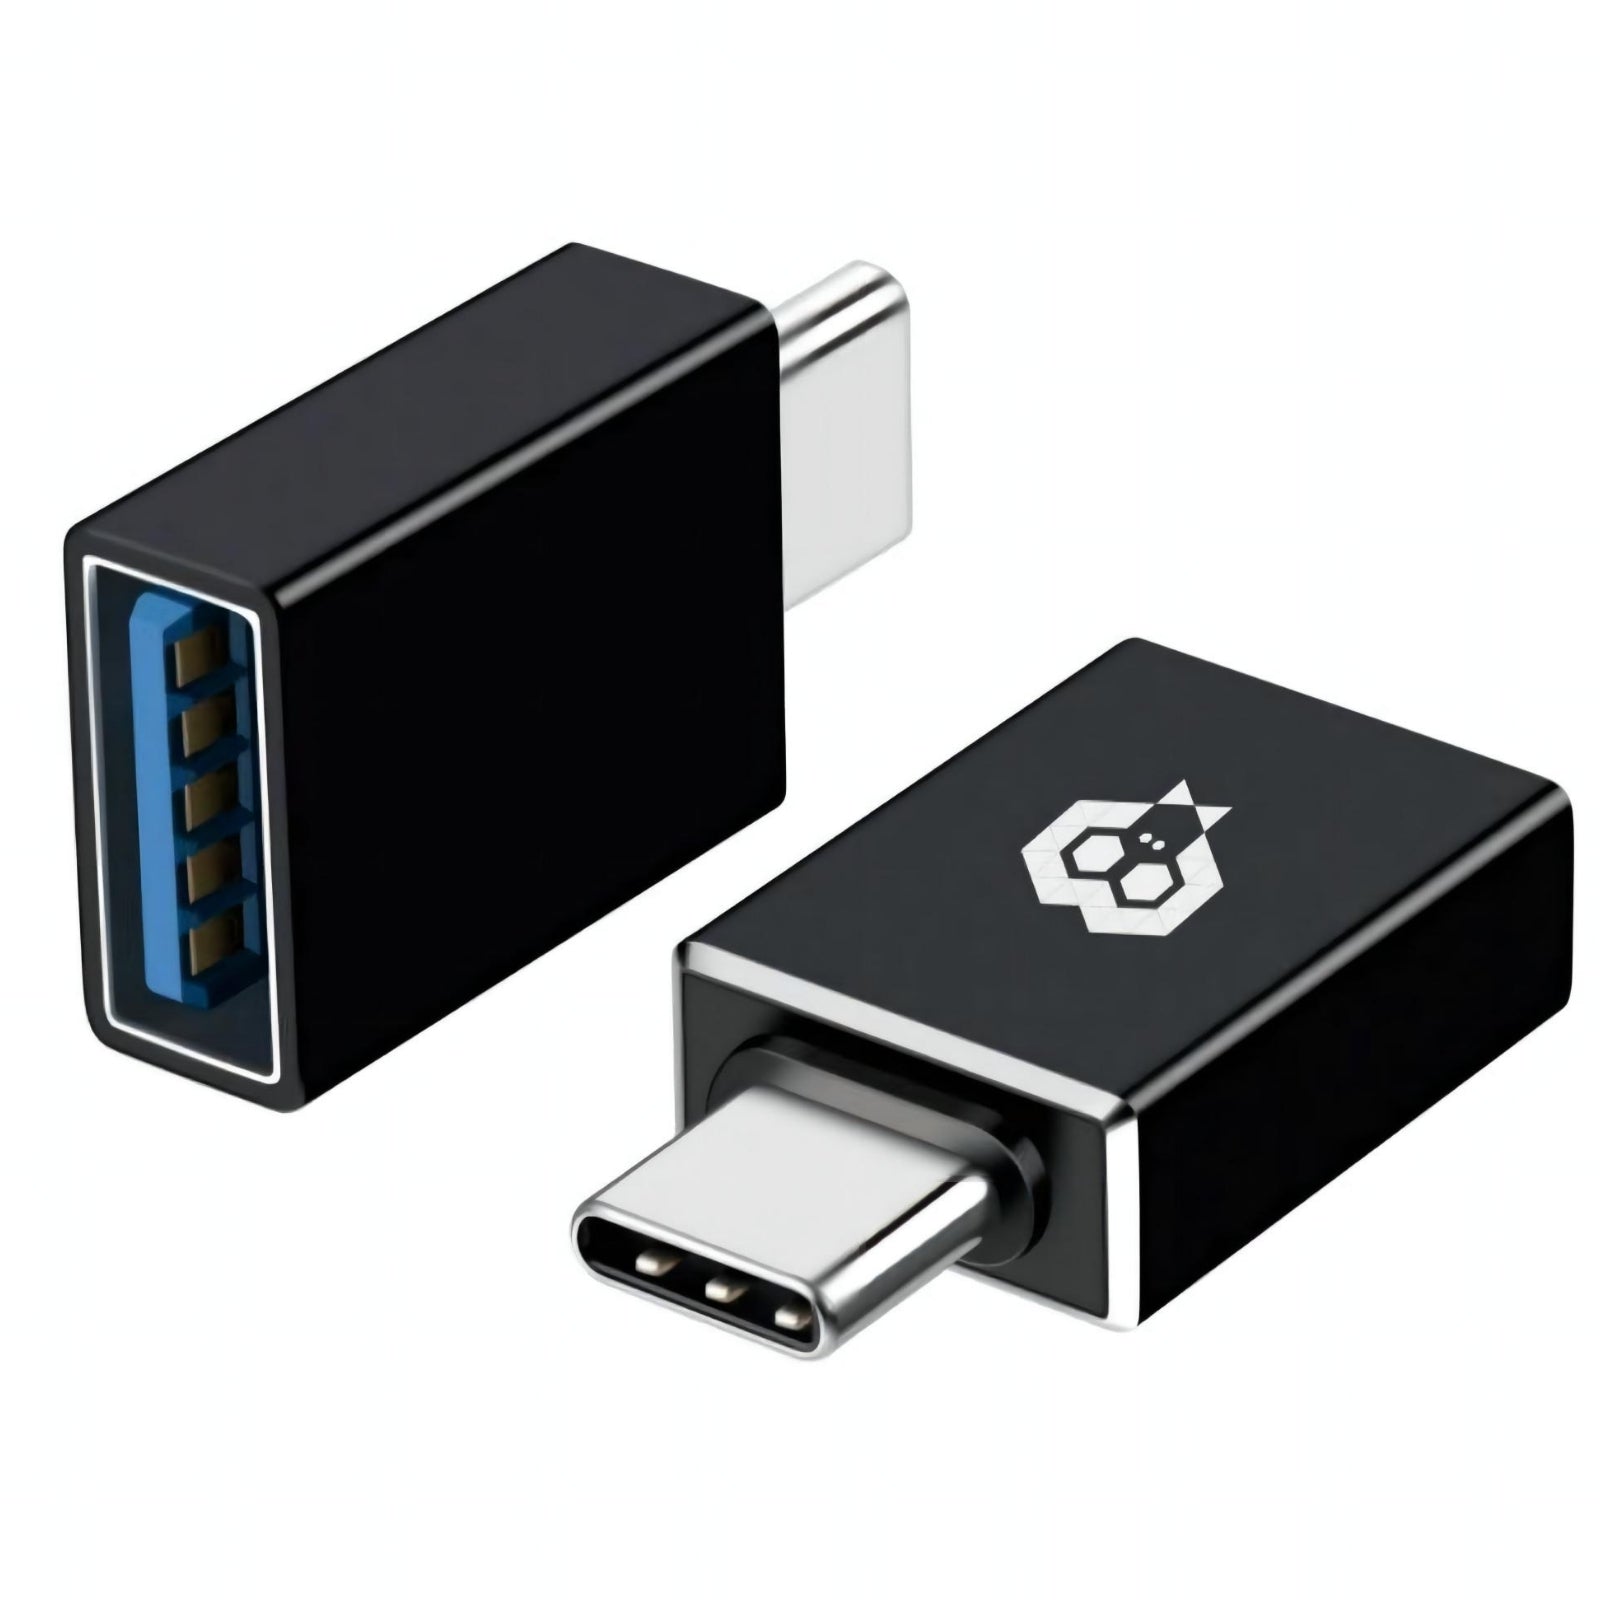 Adaptateur MonkeyTEC USB Type C vers USB 3.0 pour Macbook, iPhone, iPad, Android, ordinateur portable et autres appareils de type C